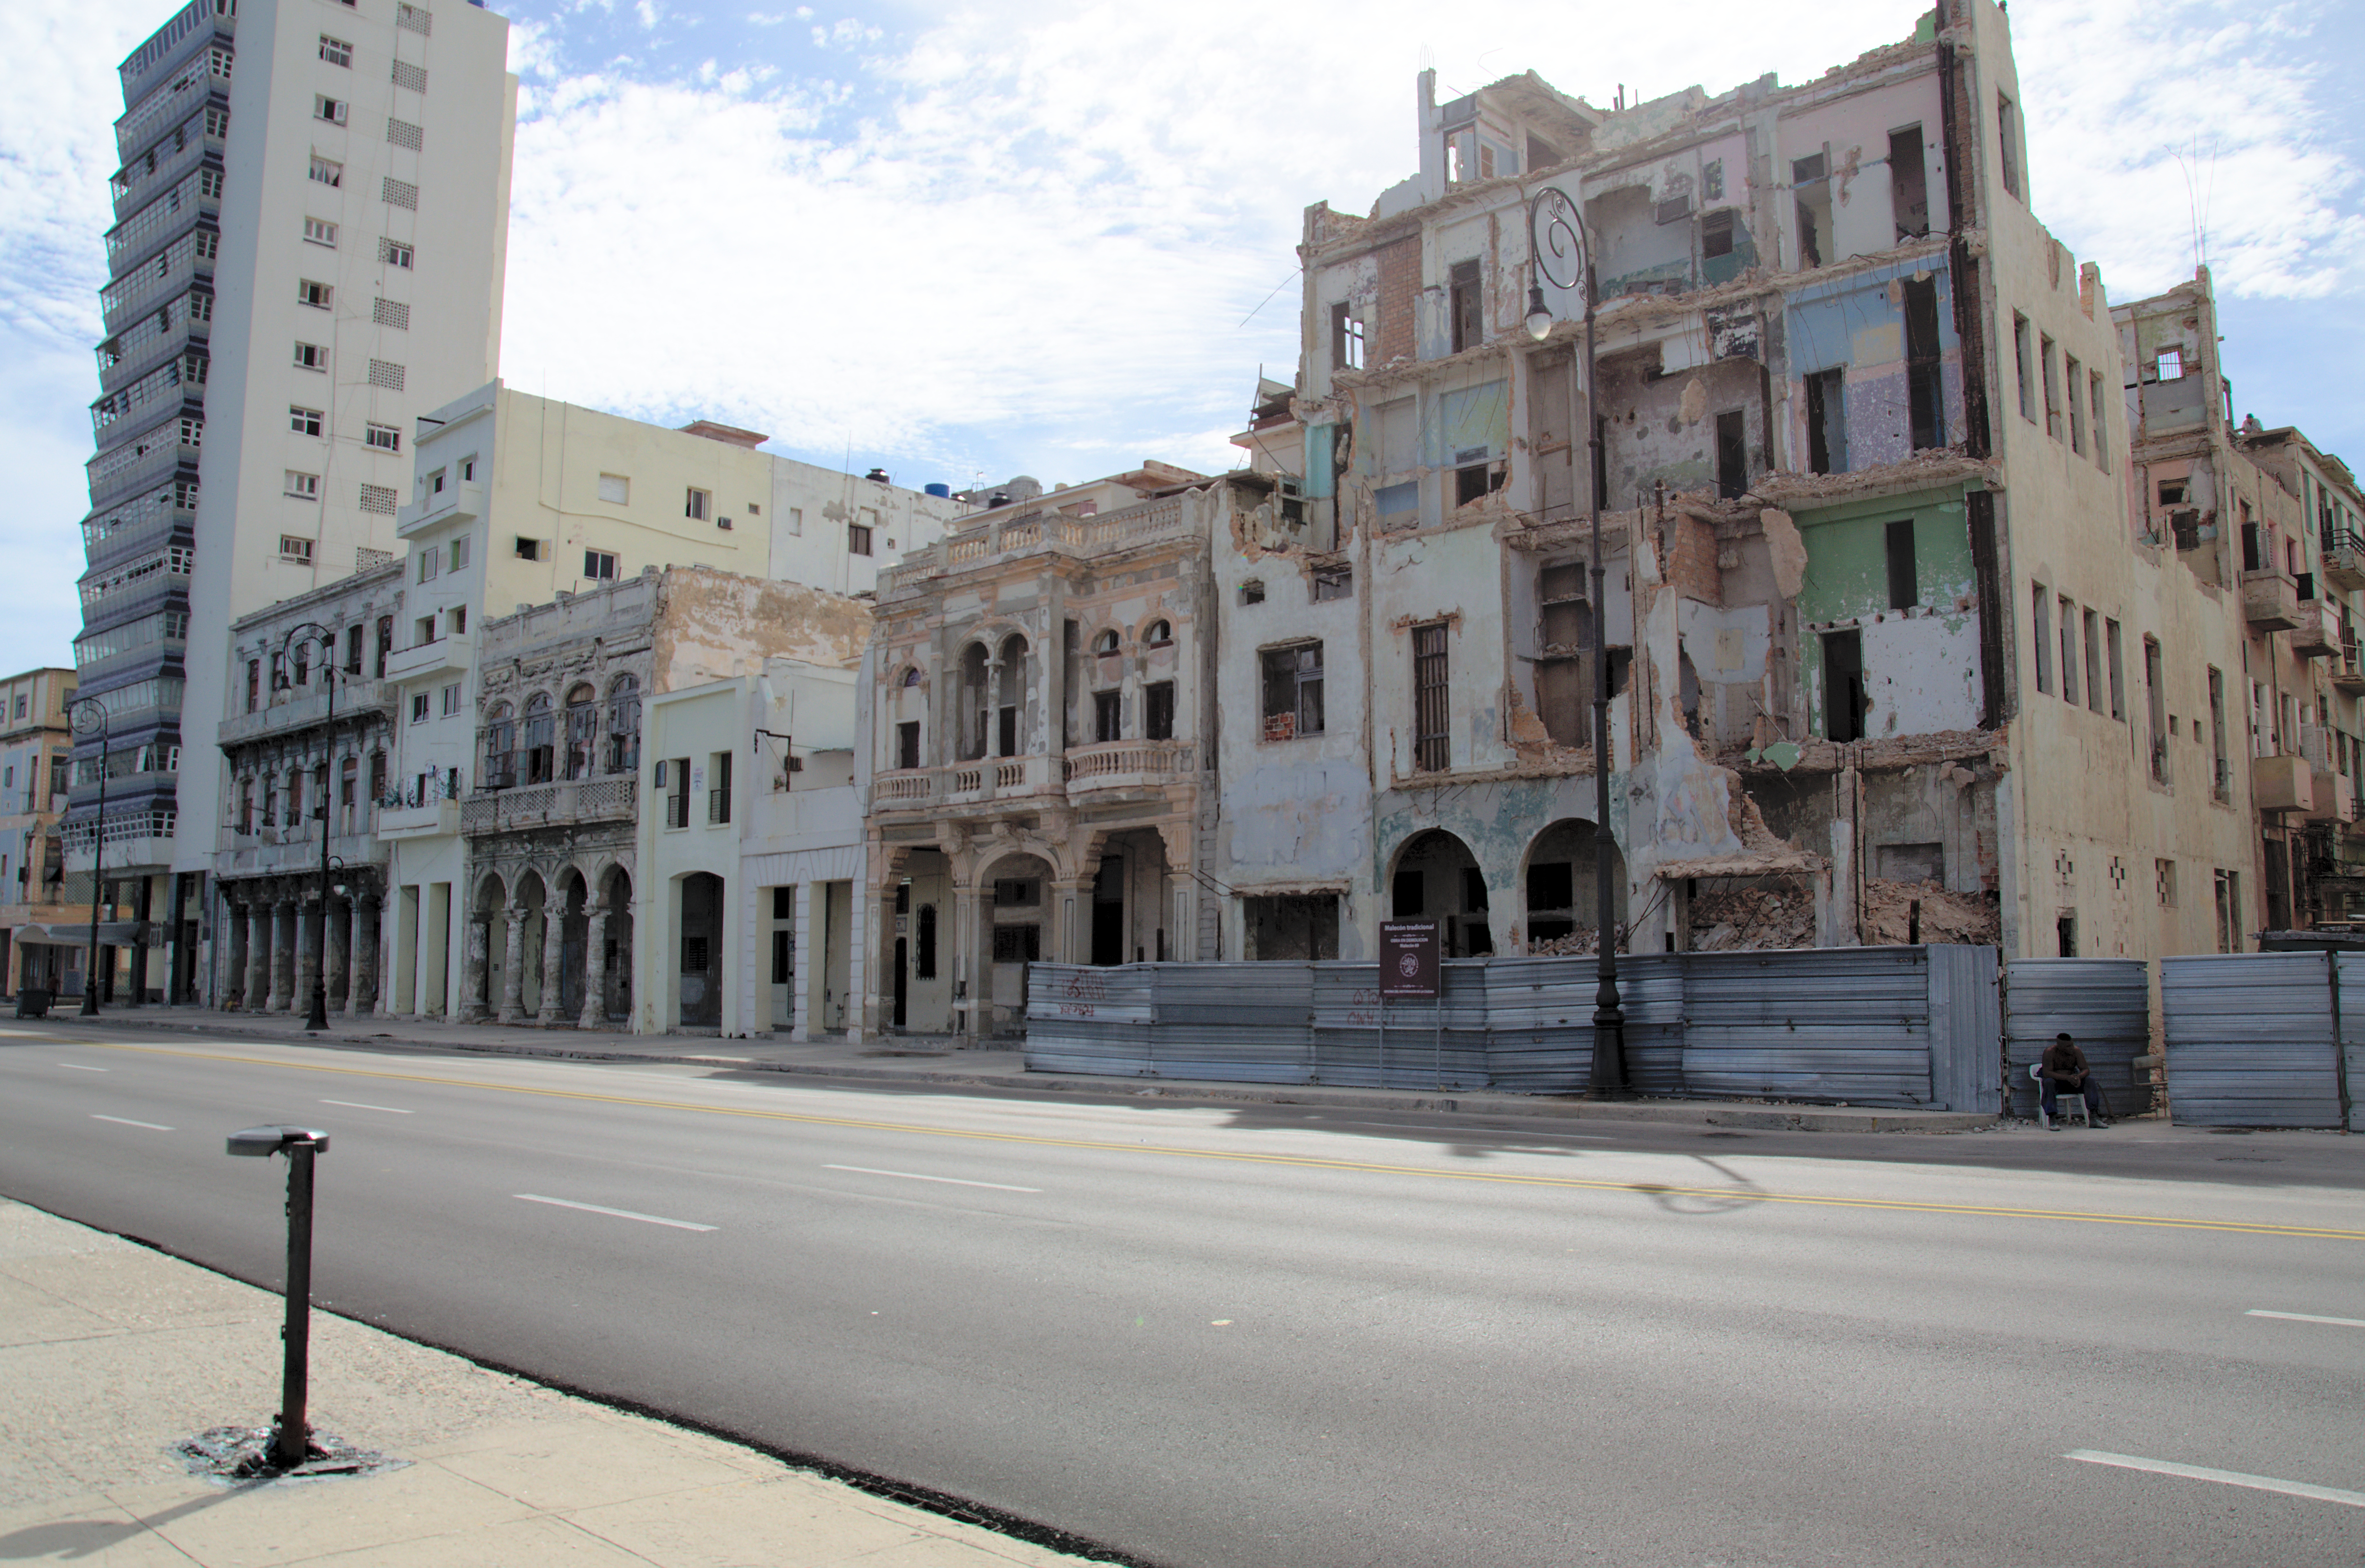 Ueberall in Havana findet man verfallene alte Kolonialvillen, wie diese am Malecon